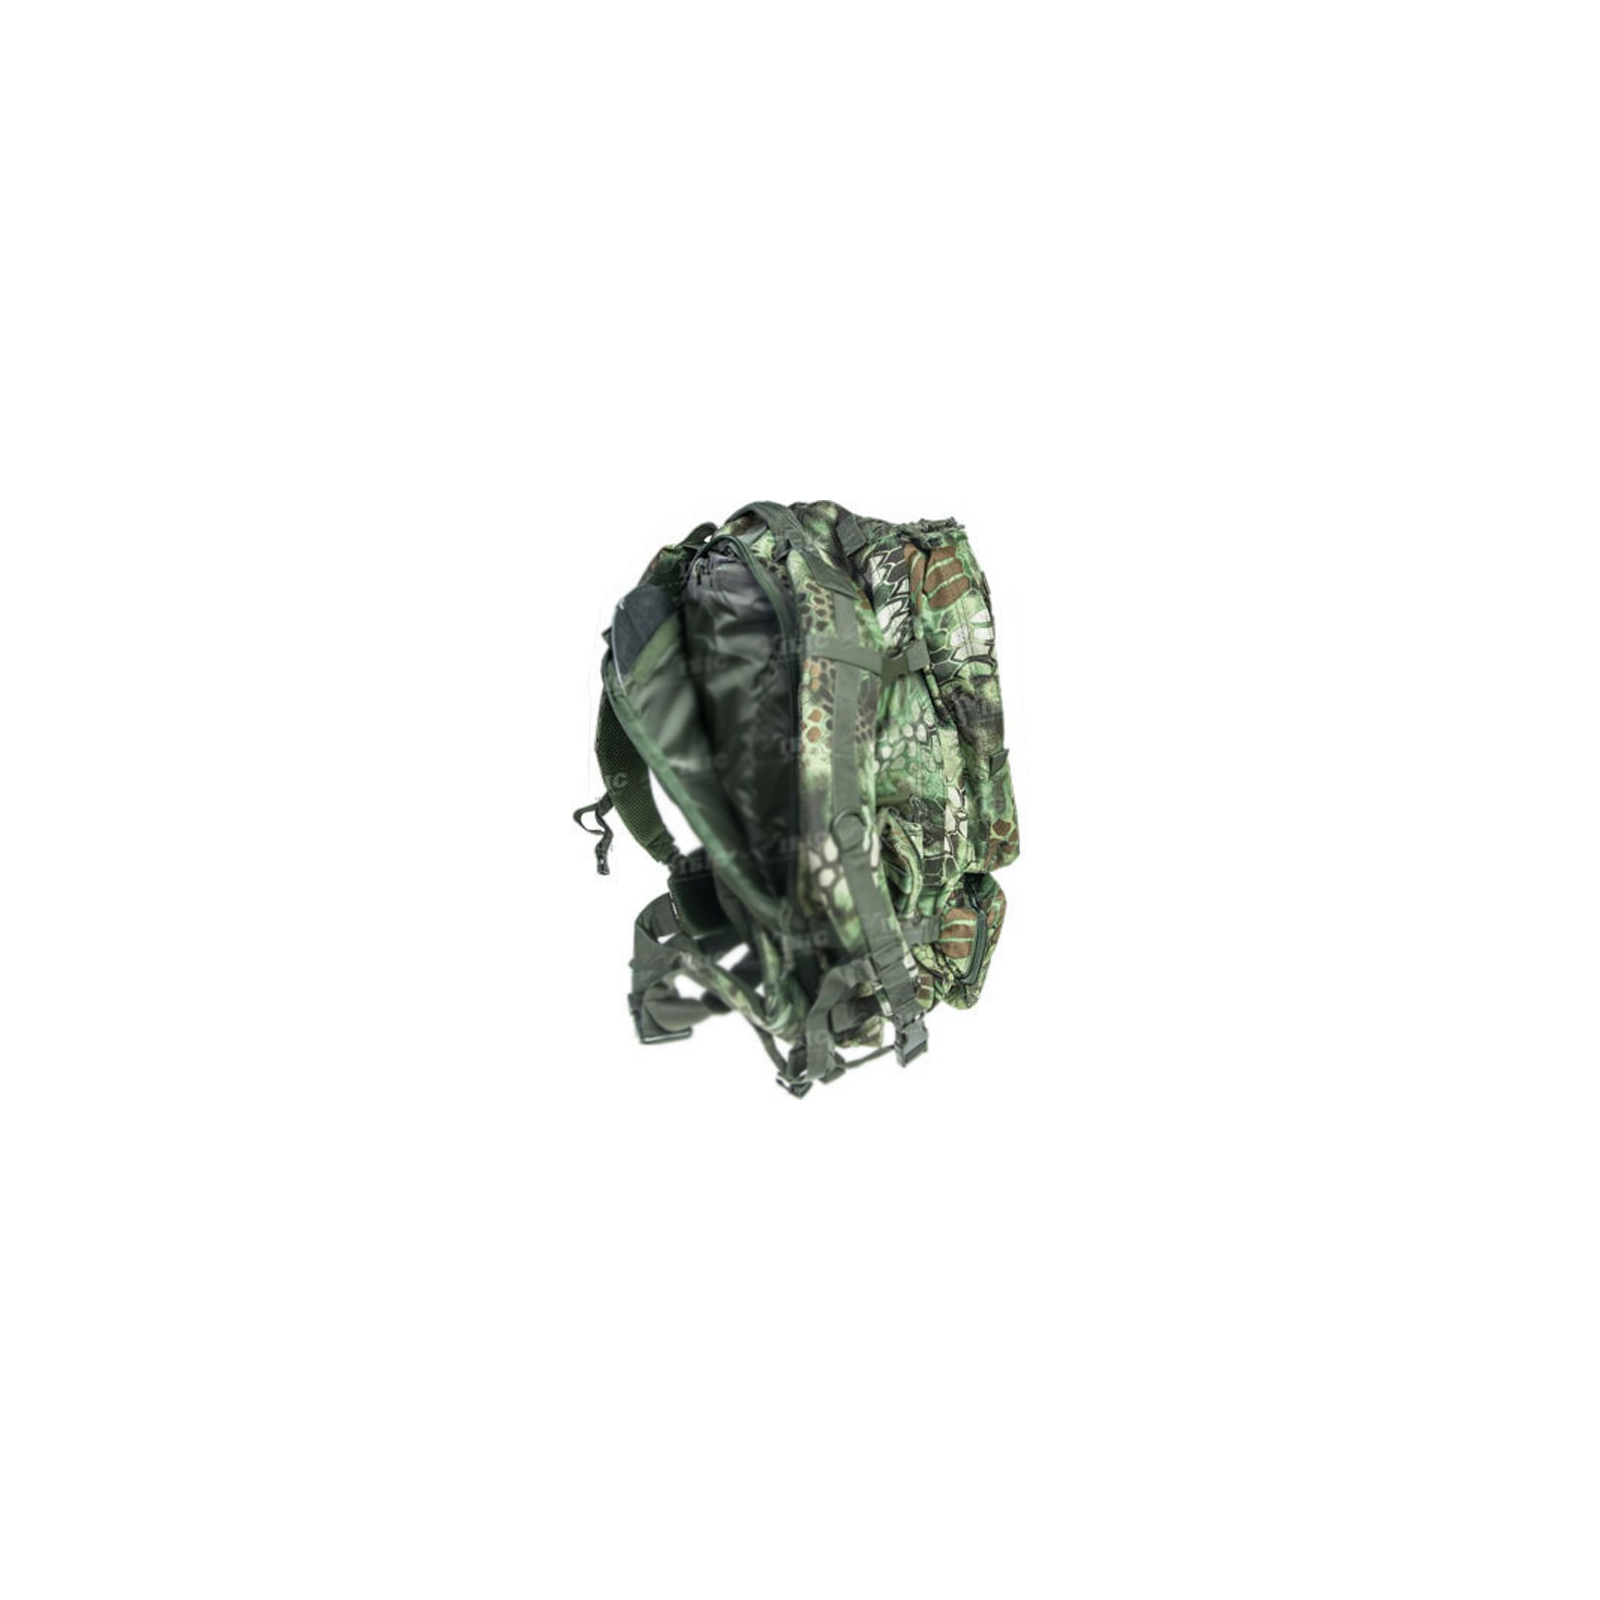 Рюкзак туристичний Skif Tac тактический 3-х дневный 45 литров kryptek green (2795.02.55) зображення 3